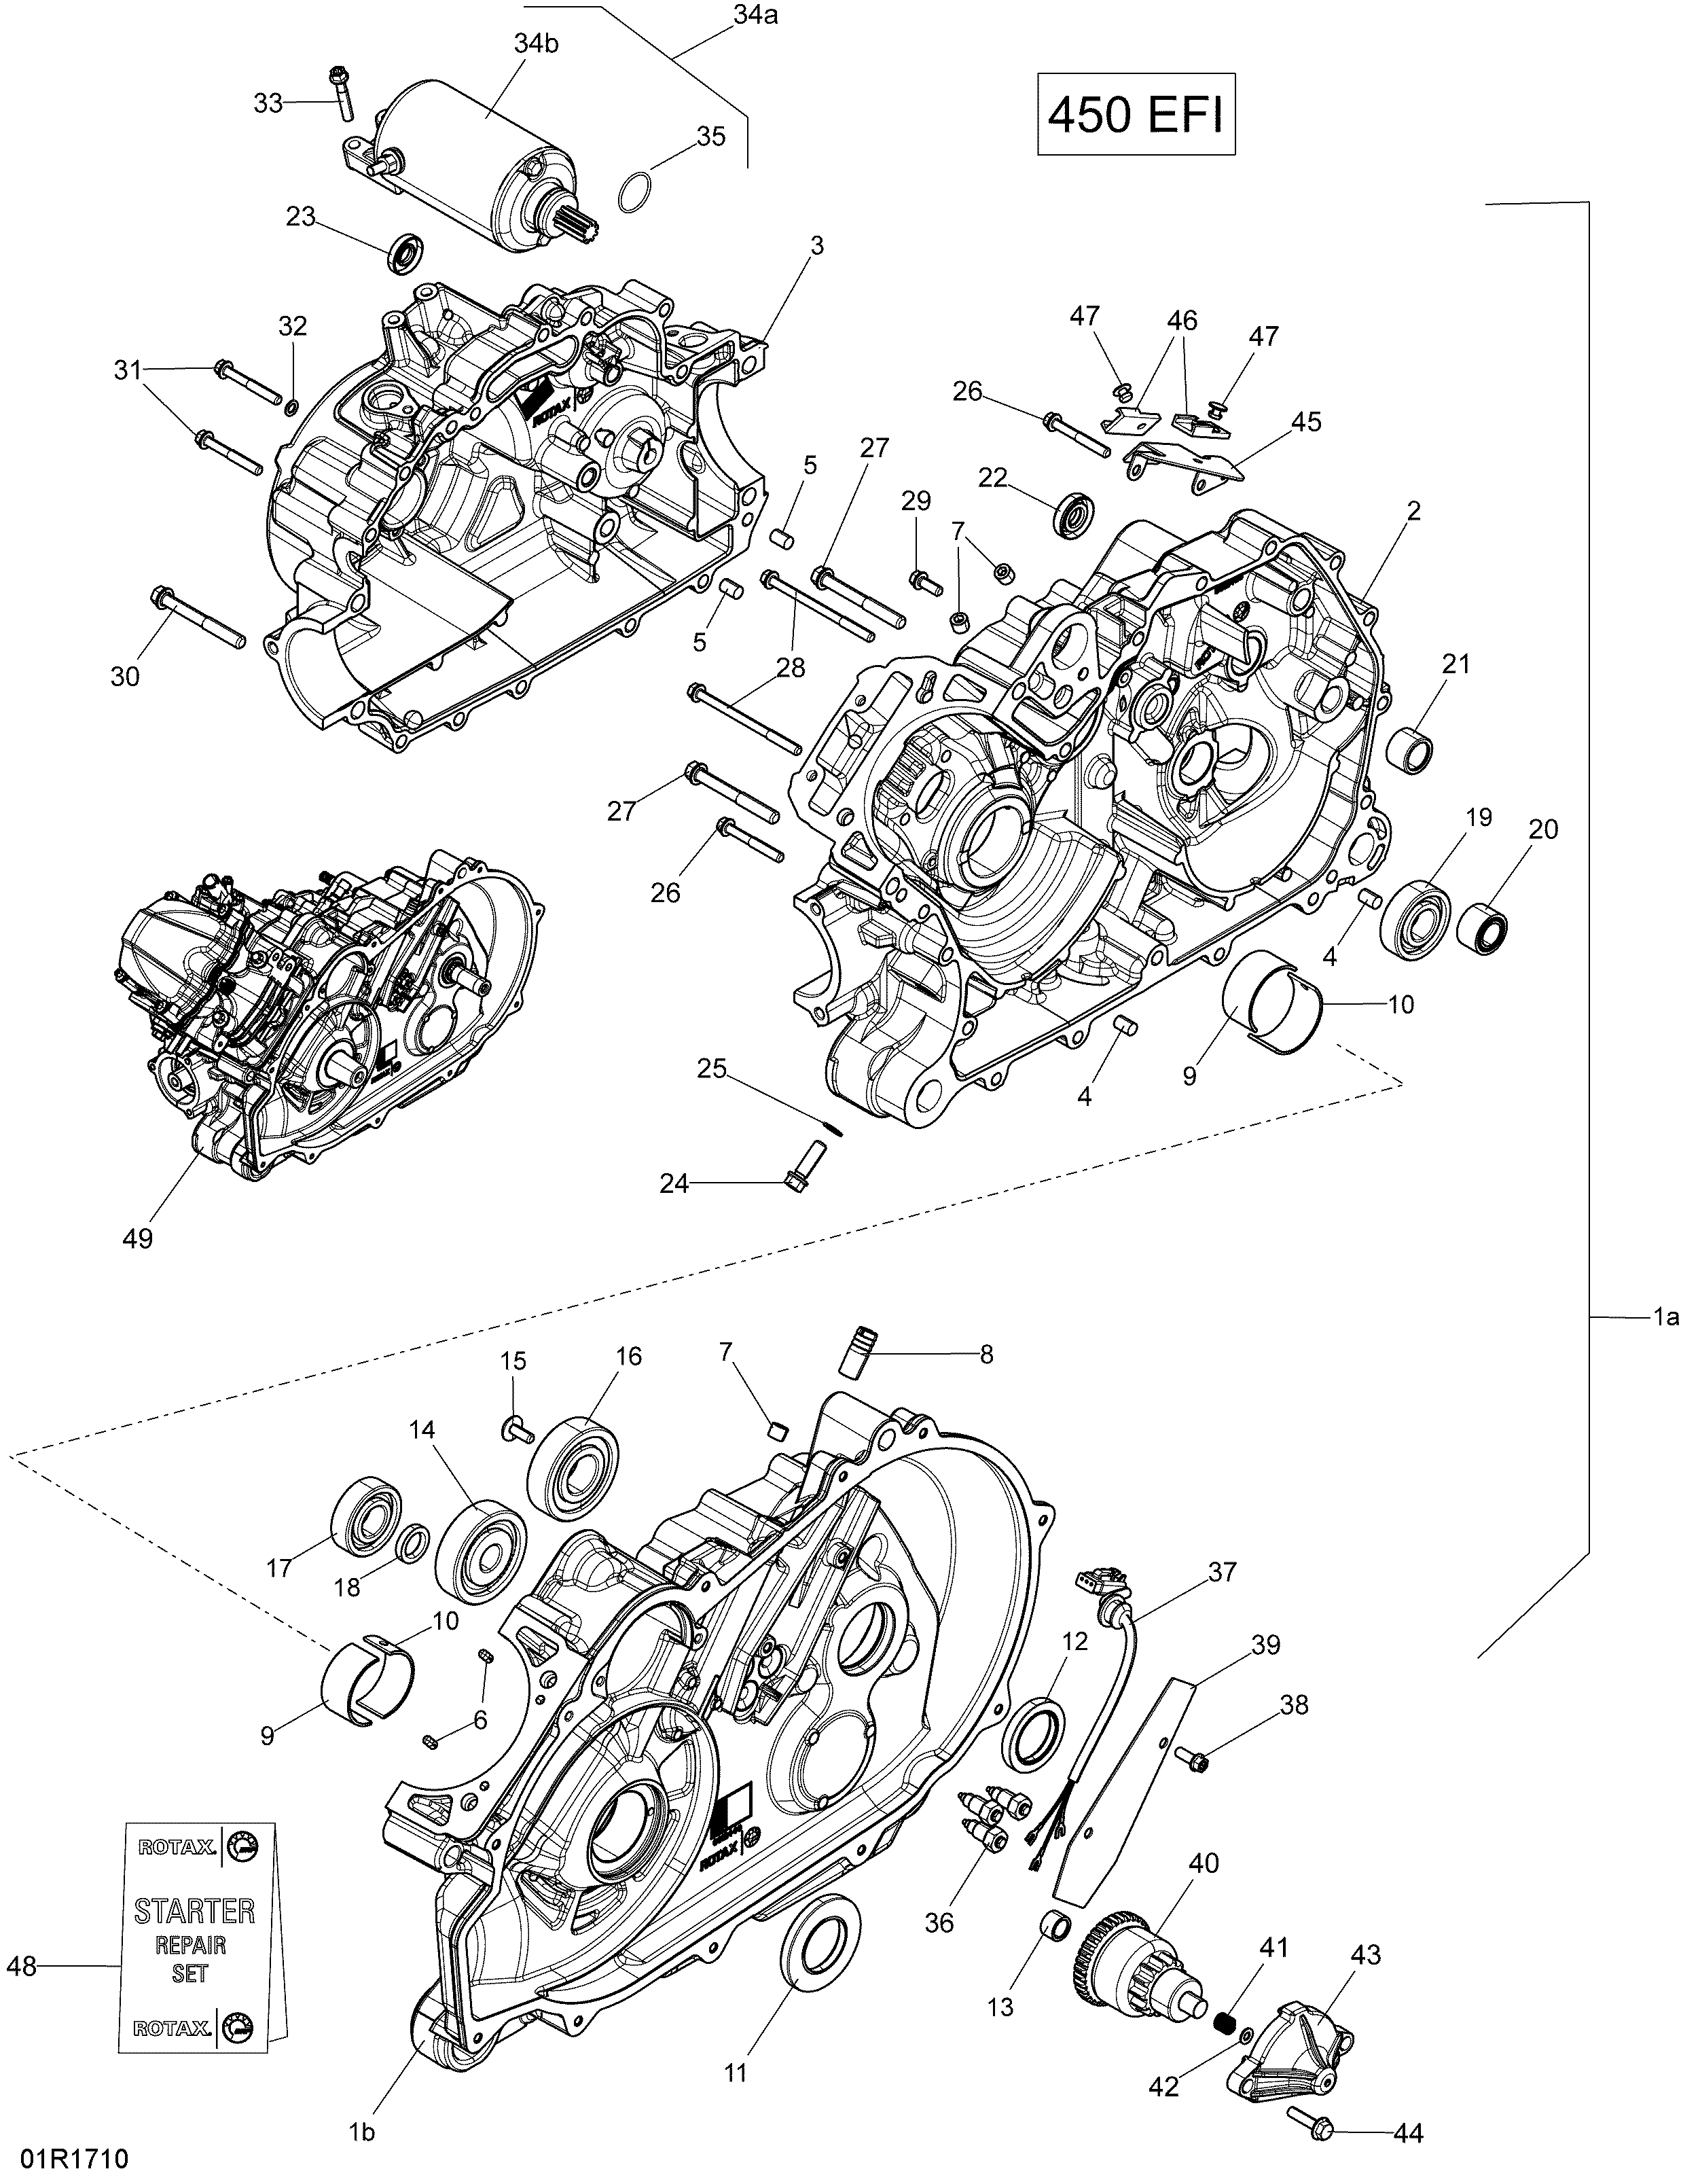 Crankcase - 450 EFI